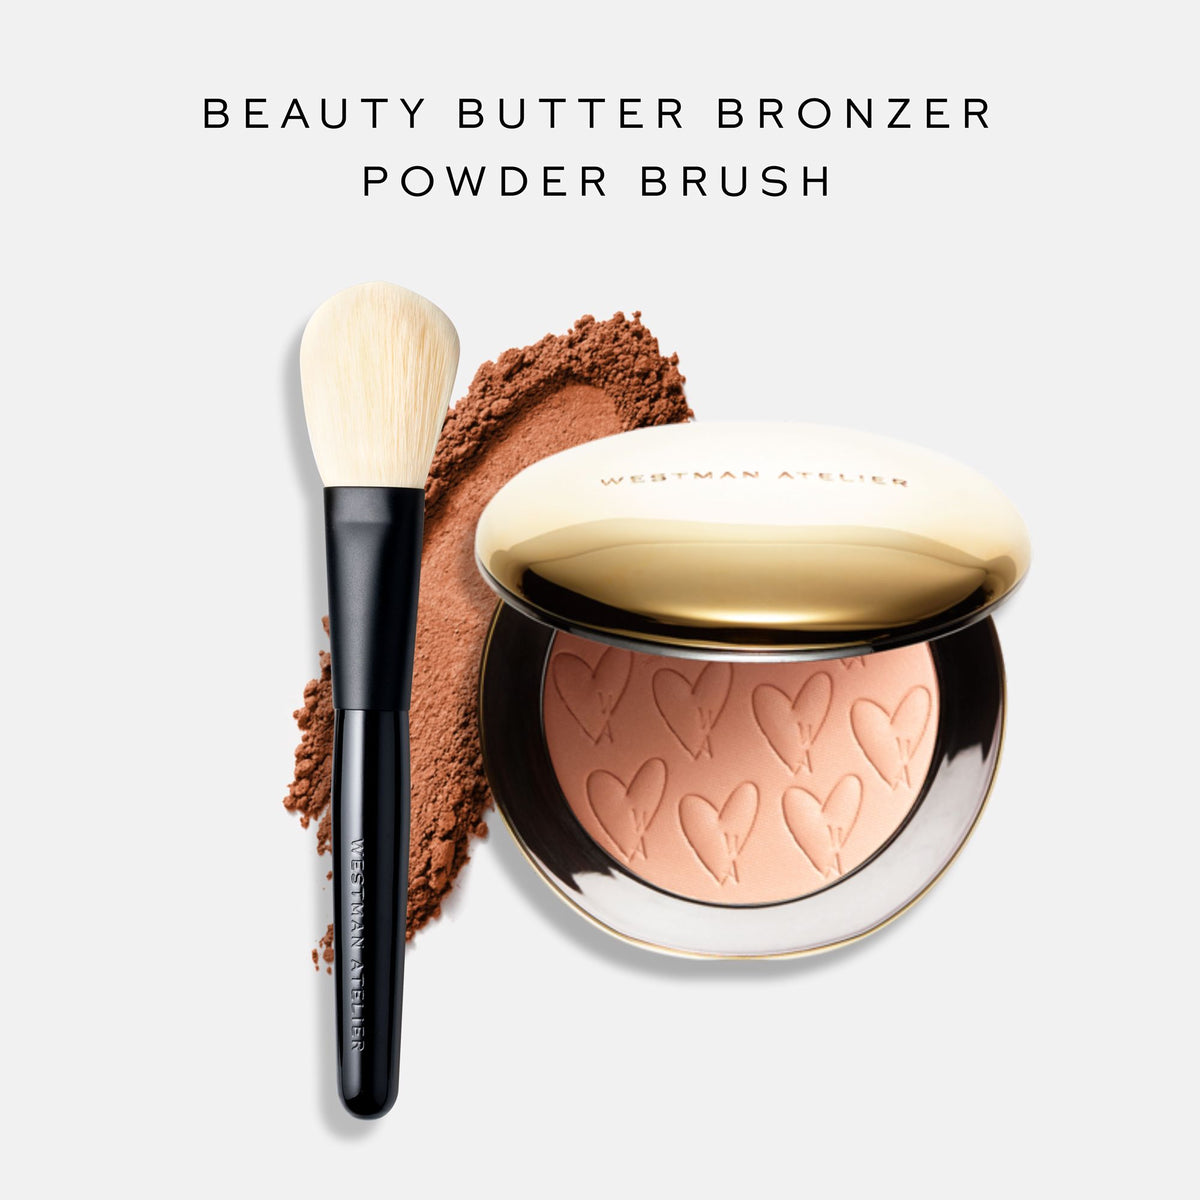 Beauty Butter Powder Bronzer